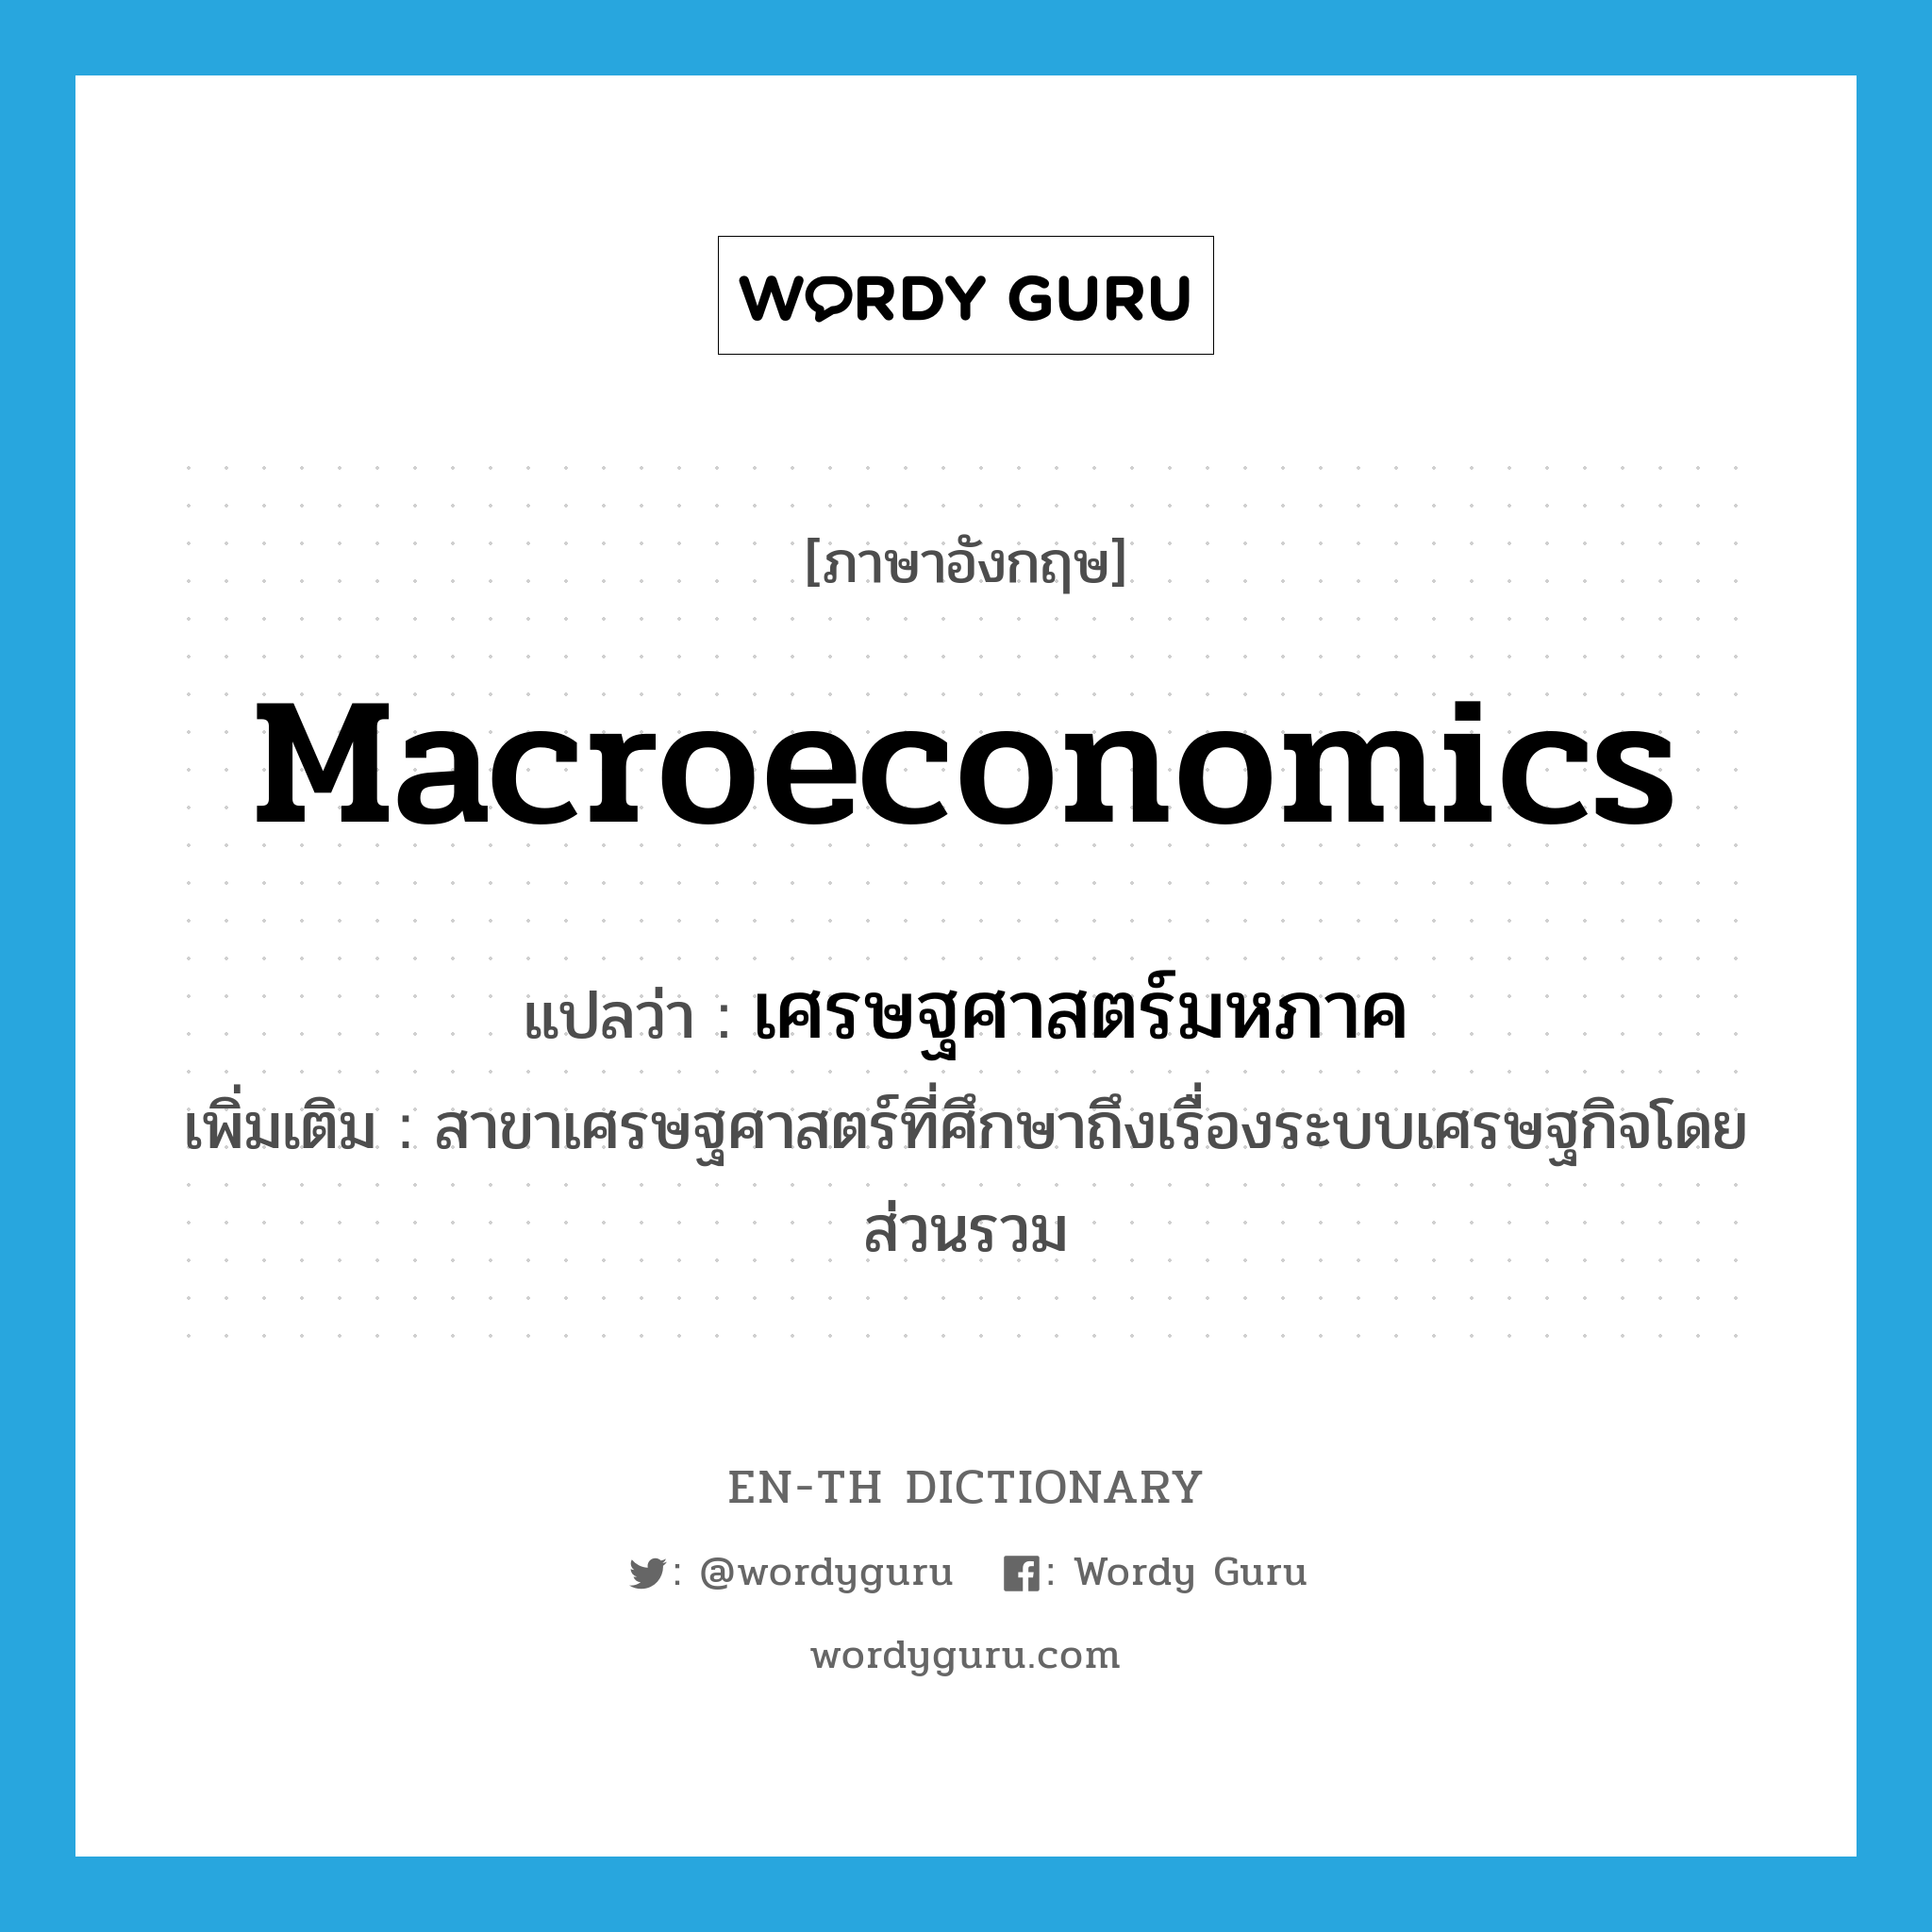 macroeconomics แปลว่า?, คำศัพท์ภาษาอังกฤษ macroeconomics แปลว่า เศรษฐศาสตร์มหภาค ประเภท N เพิ่มเติม สาขาเศรษฐศาสตร์ที่ศึกษาถึงเรื่องระบบเศรษฐกิจโดยส่วนรวม หมวด N